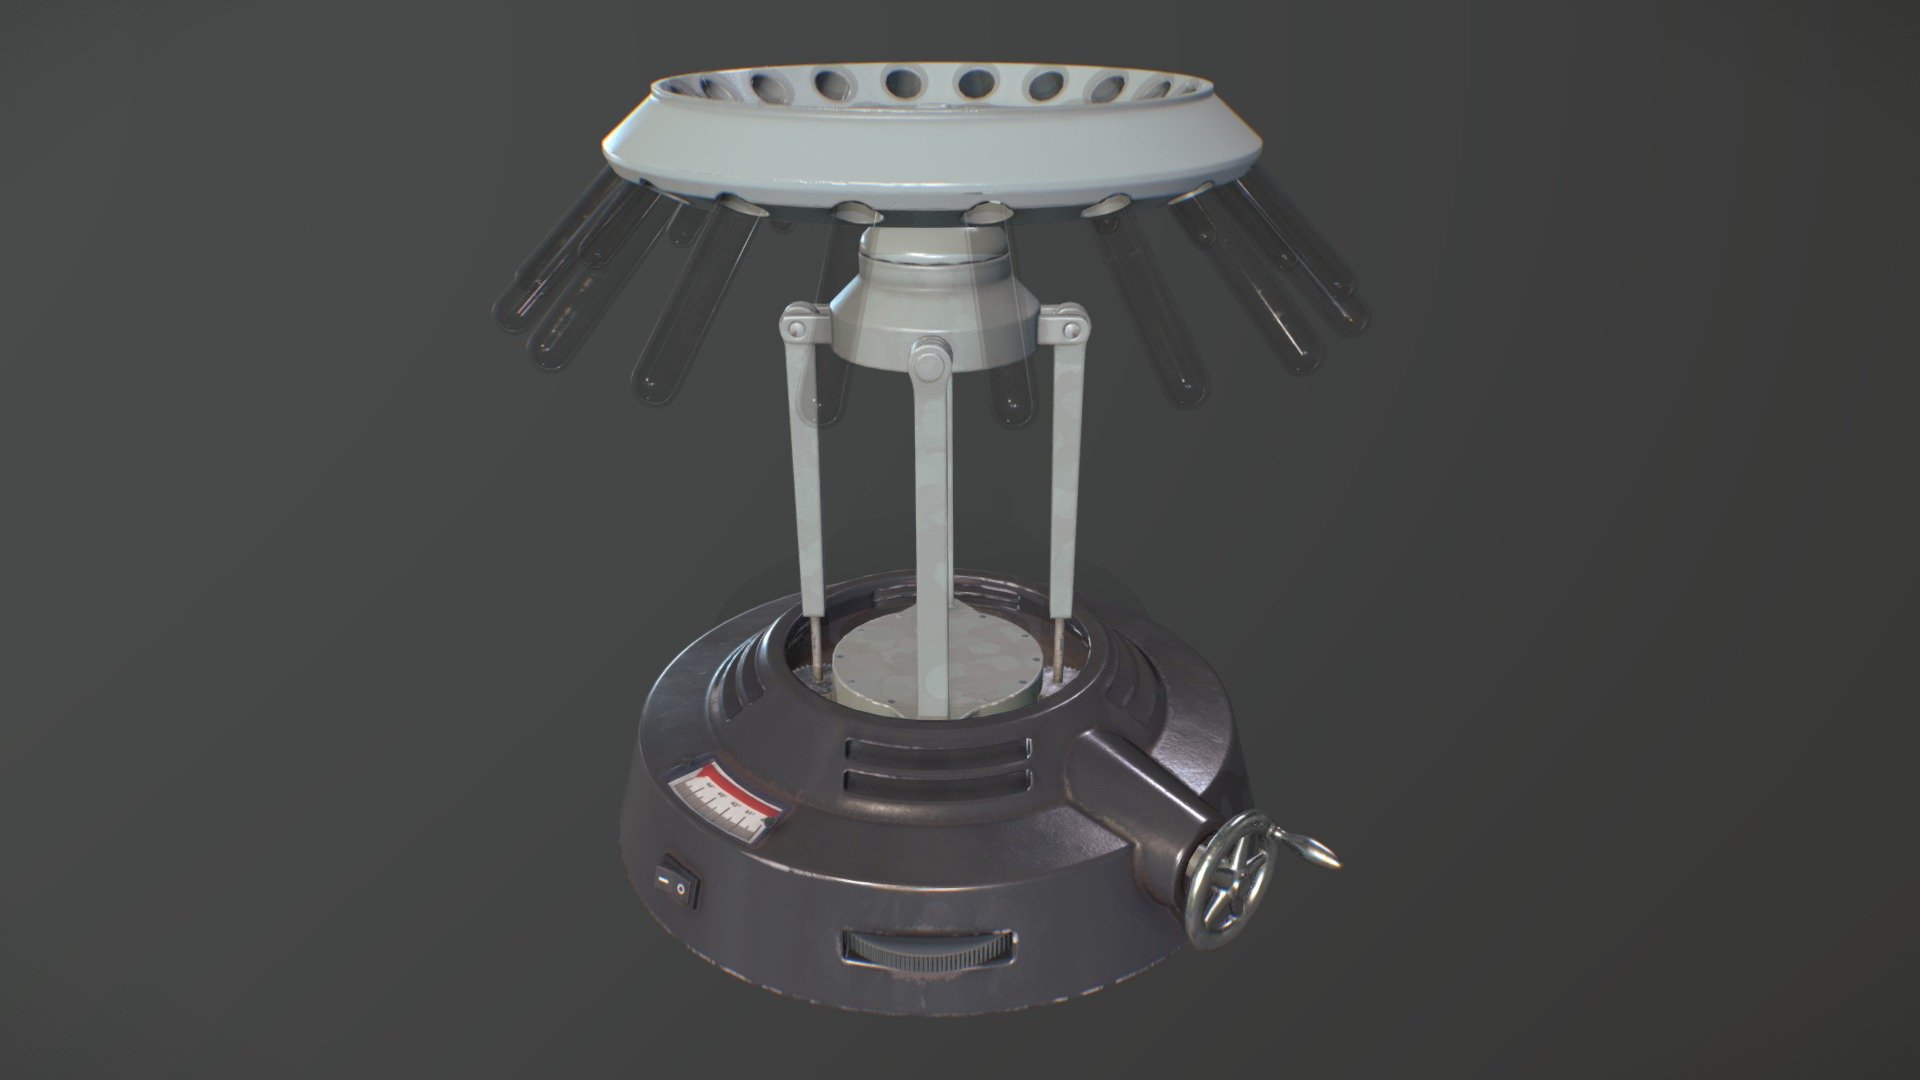 adjustable centrifuge capable od holding up to 24 viles - old hospital centrifuge - 3D model by benji (@benjaminghysDAE) 3d model